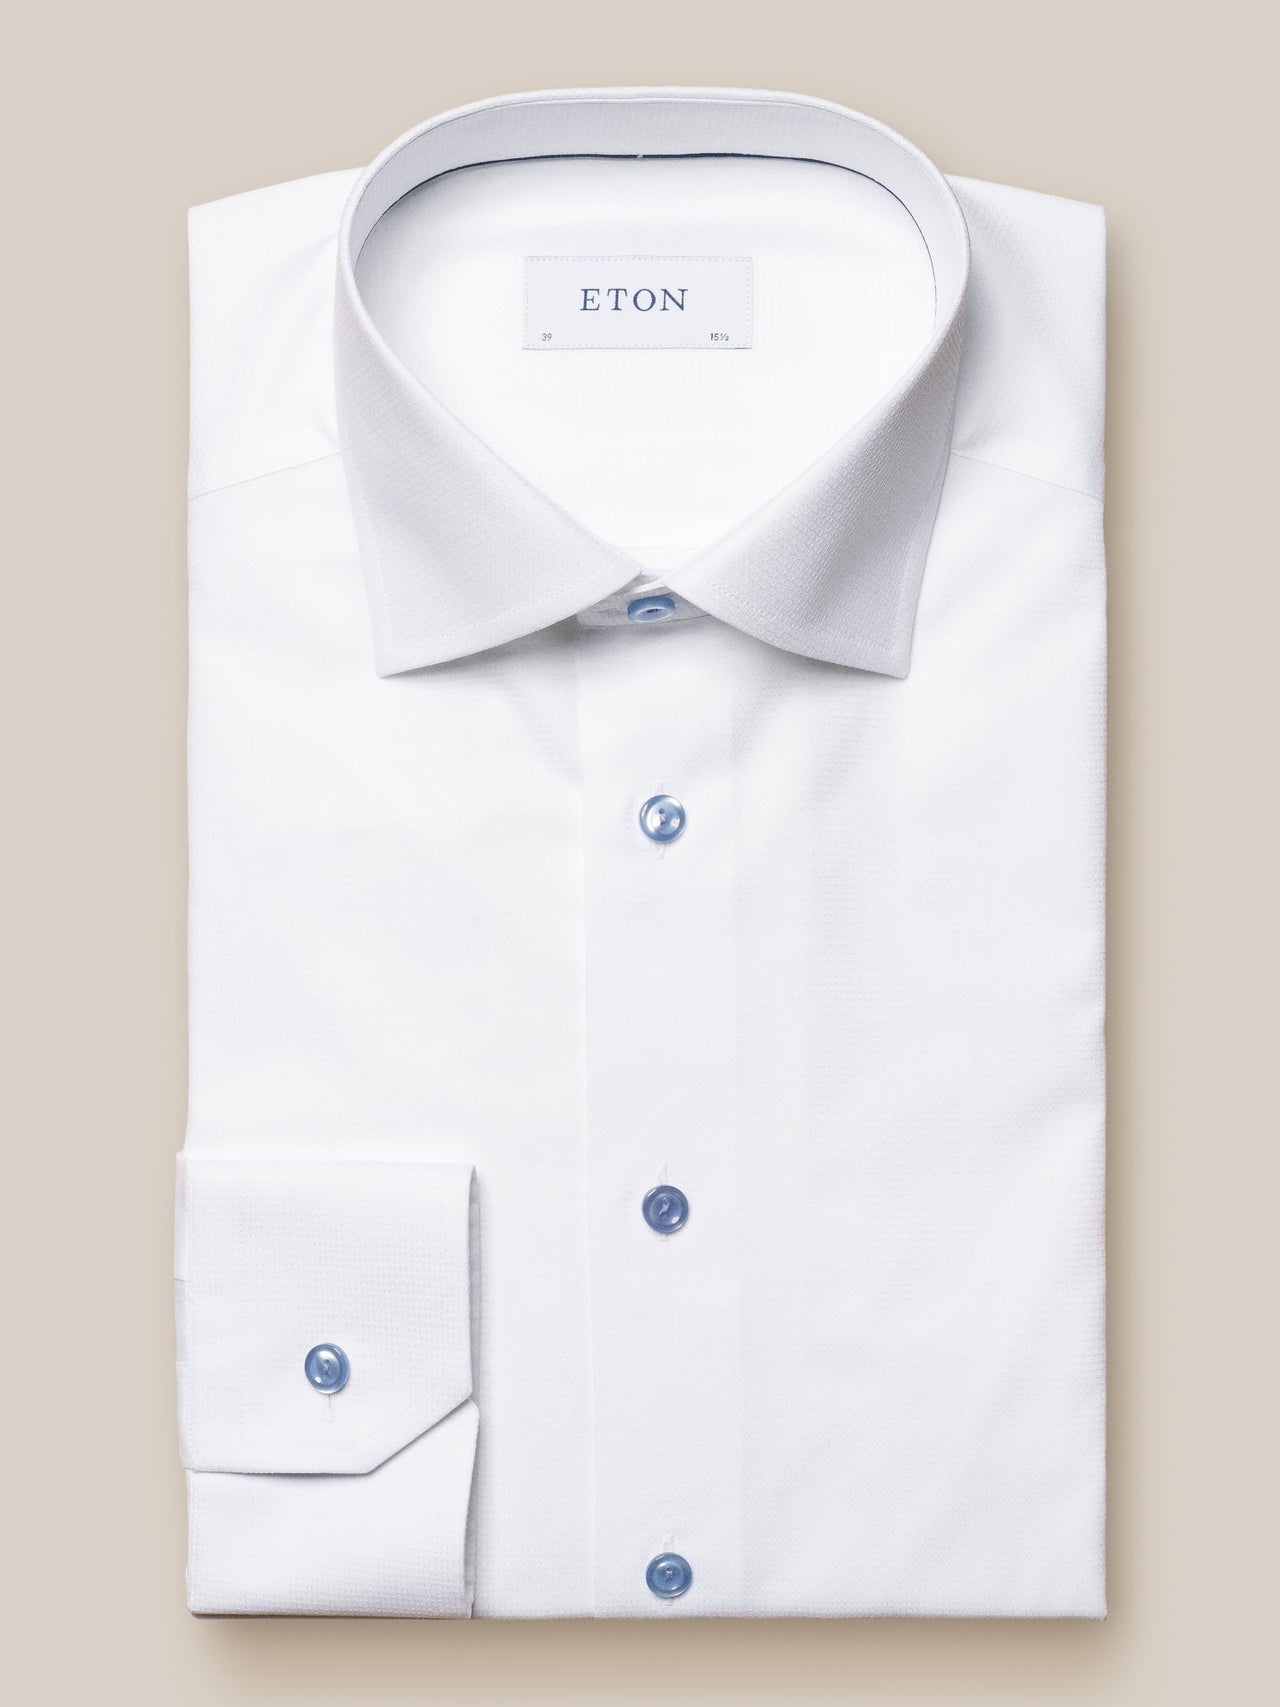 ETON Plain Shirt With Contrast Button SC-Contemporary Fit LIGHT BLUE